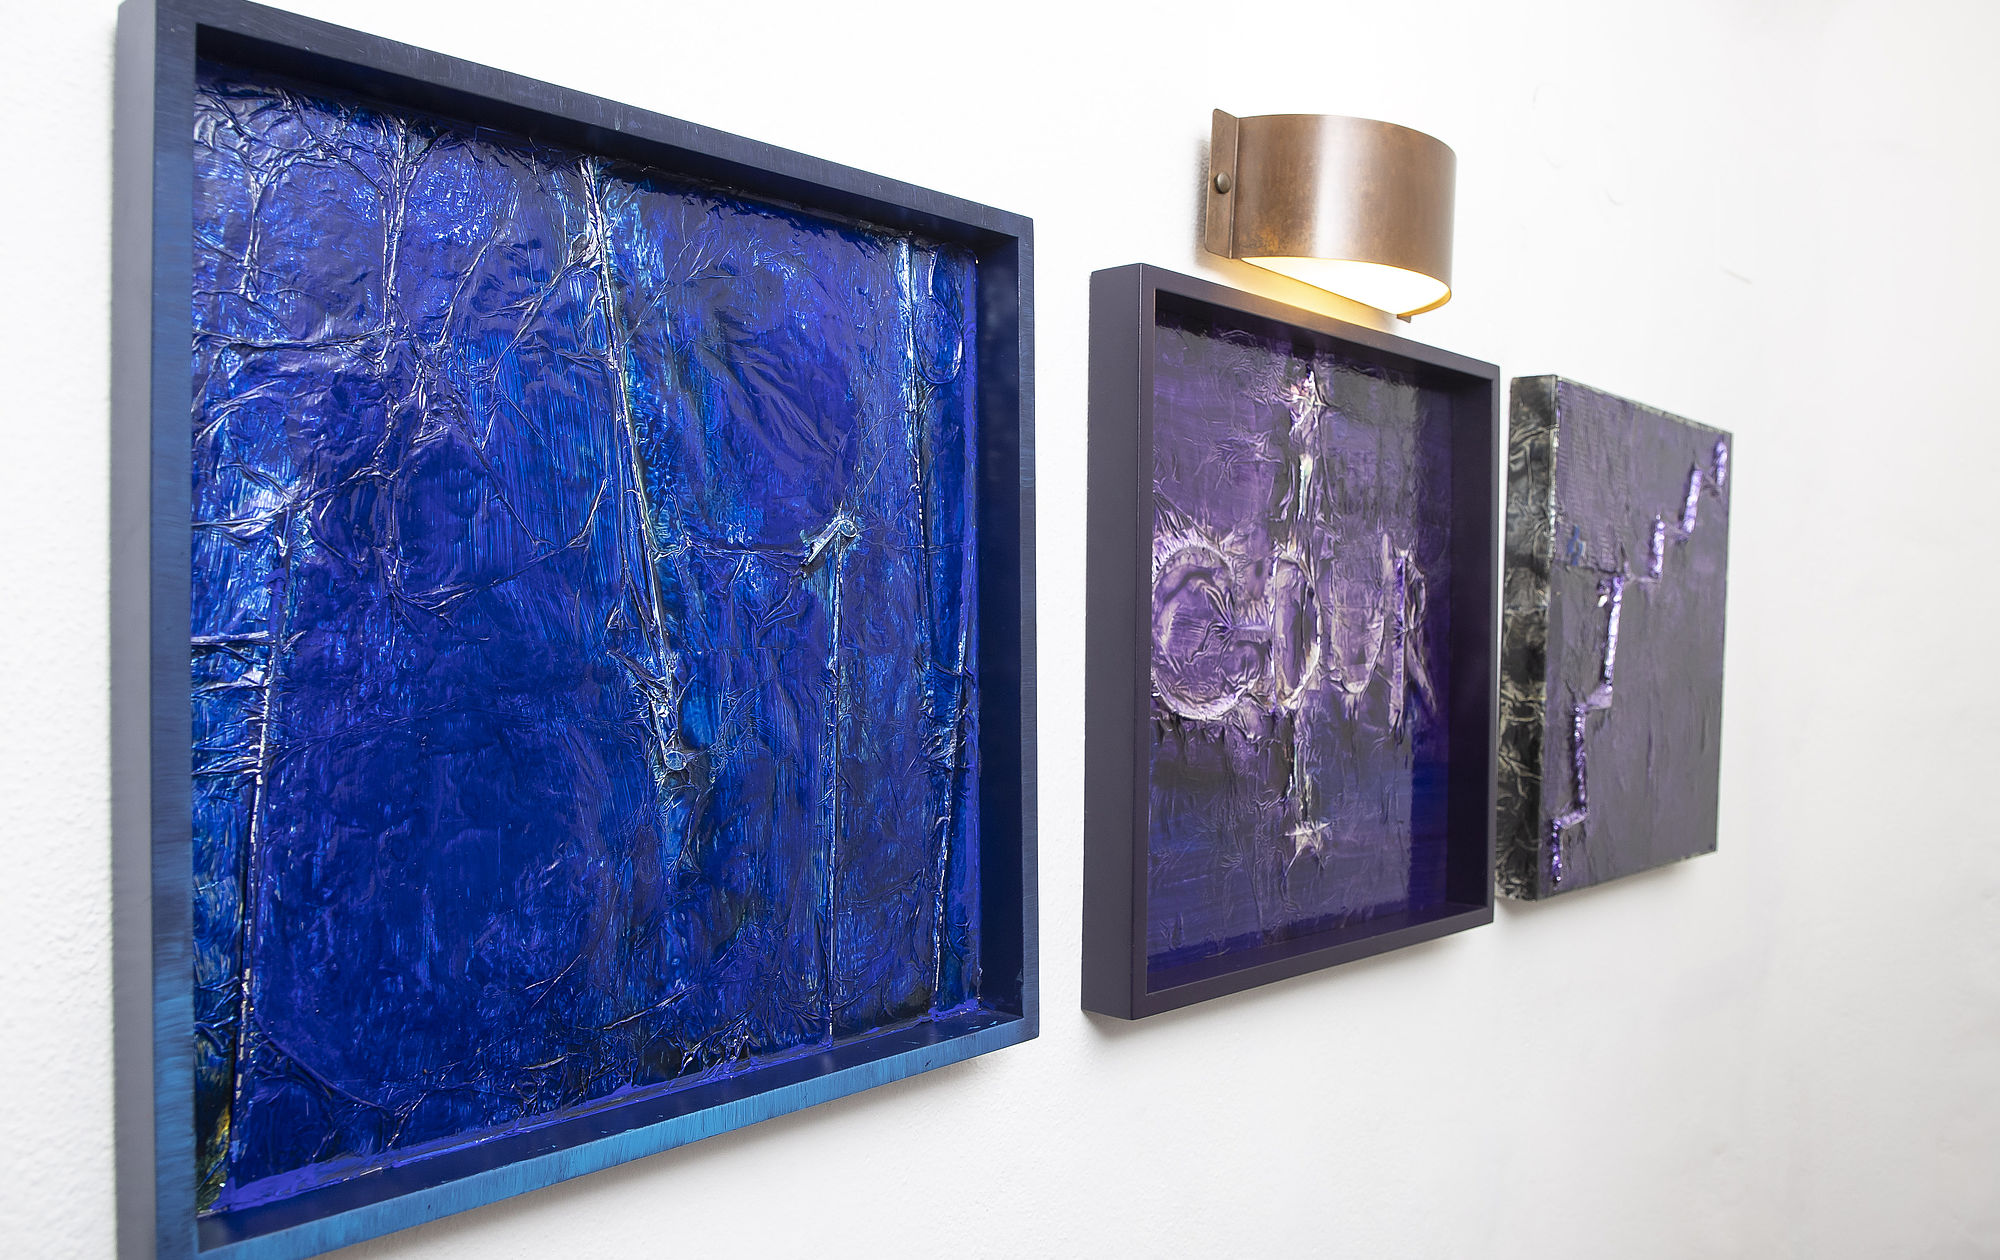 3 abstrakte blau-violette Collagen aus Aluminium, Metalldrähten und Acrylfarben des Künstlers Rinaldo Invernizzi